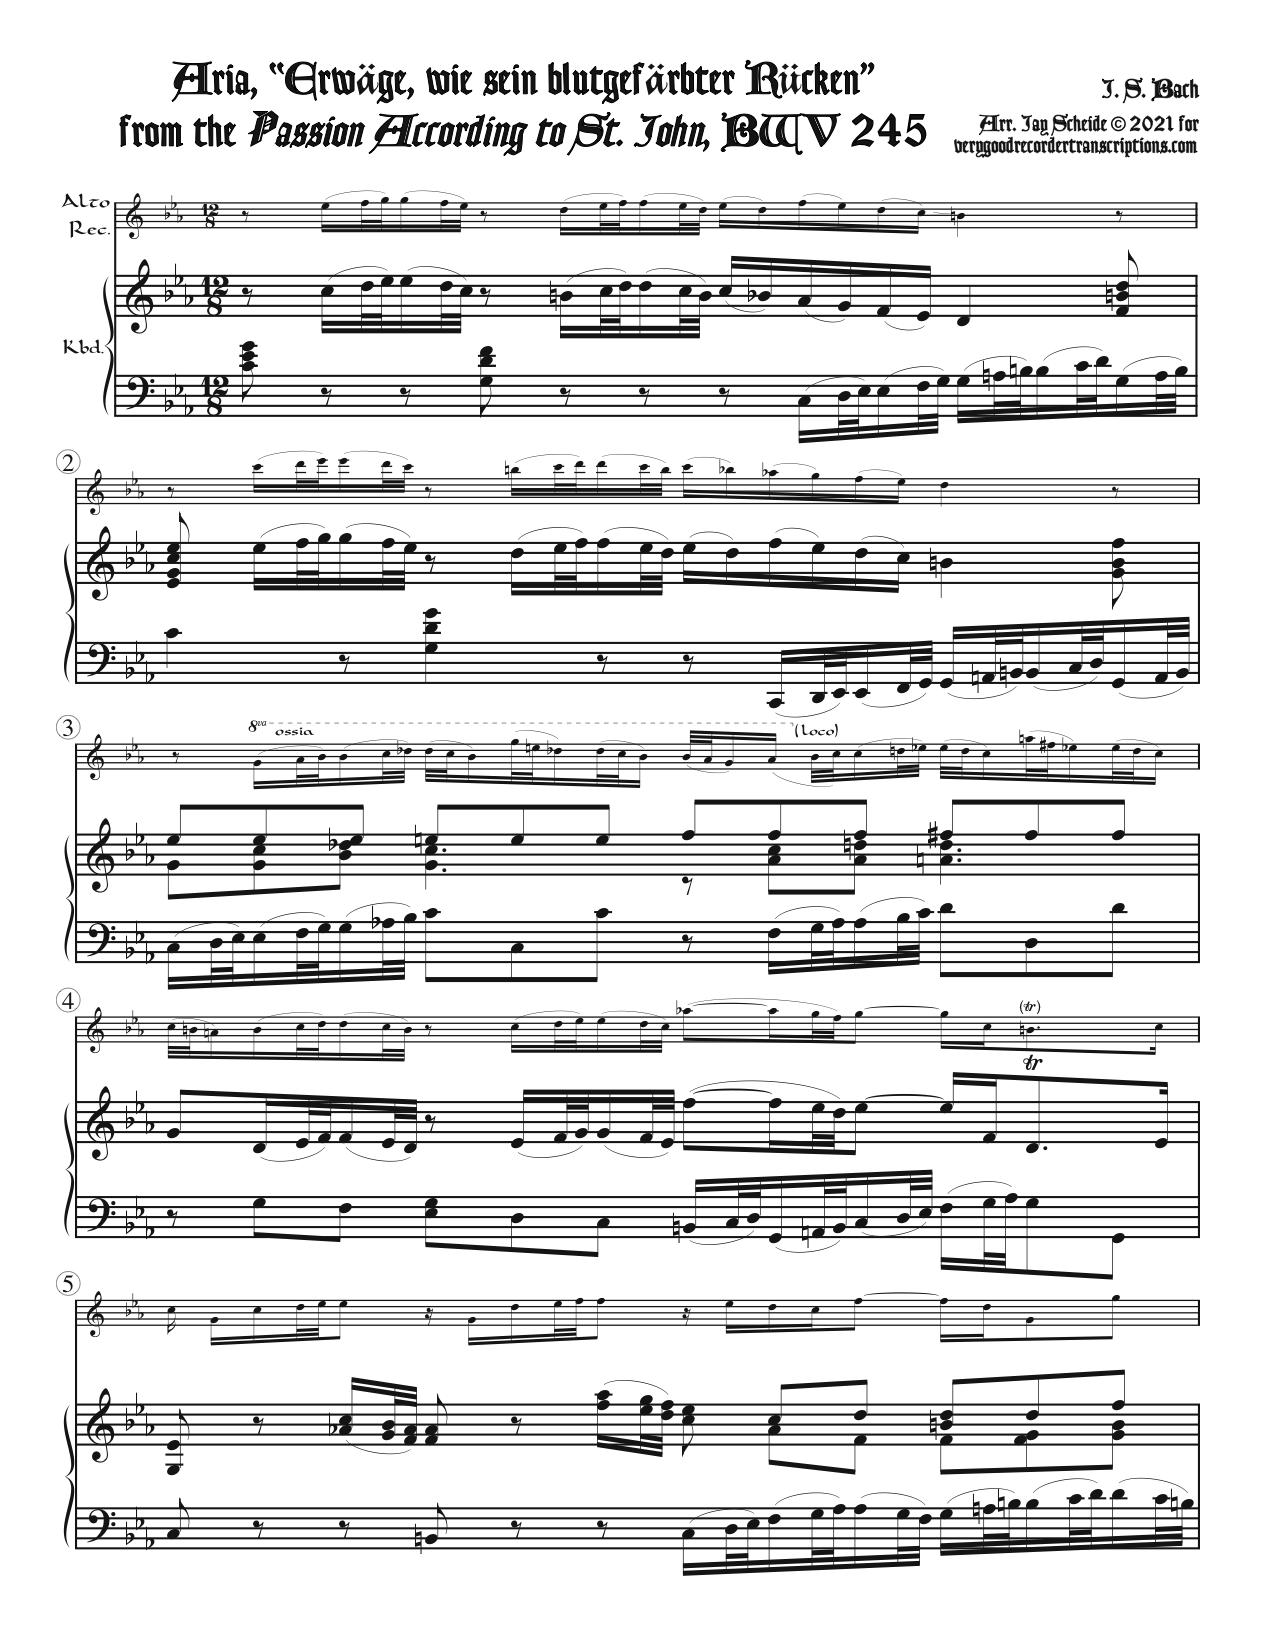 Aria, “Erwäge, wie sein blutgefärbter Rücken” from *St. John Passion*, BWV 245